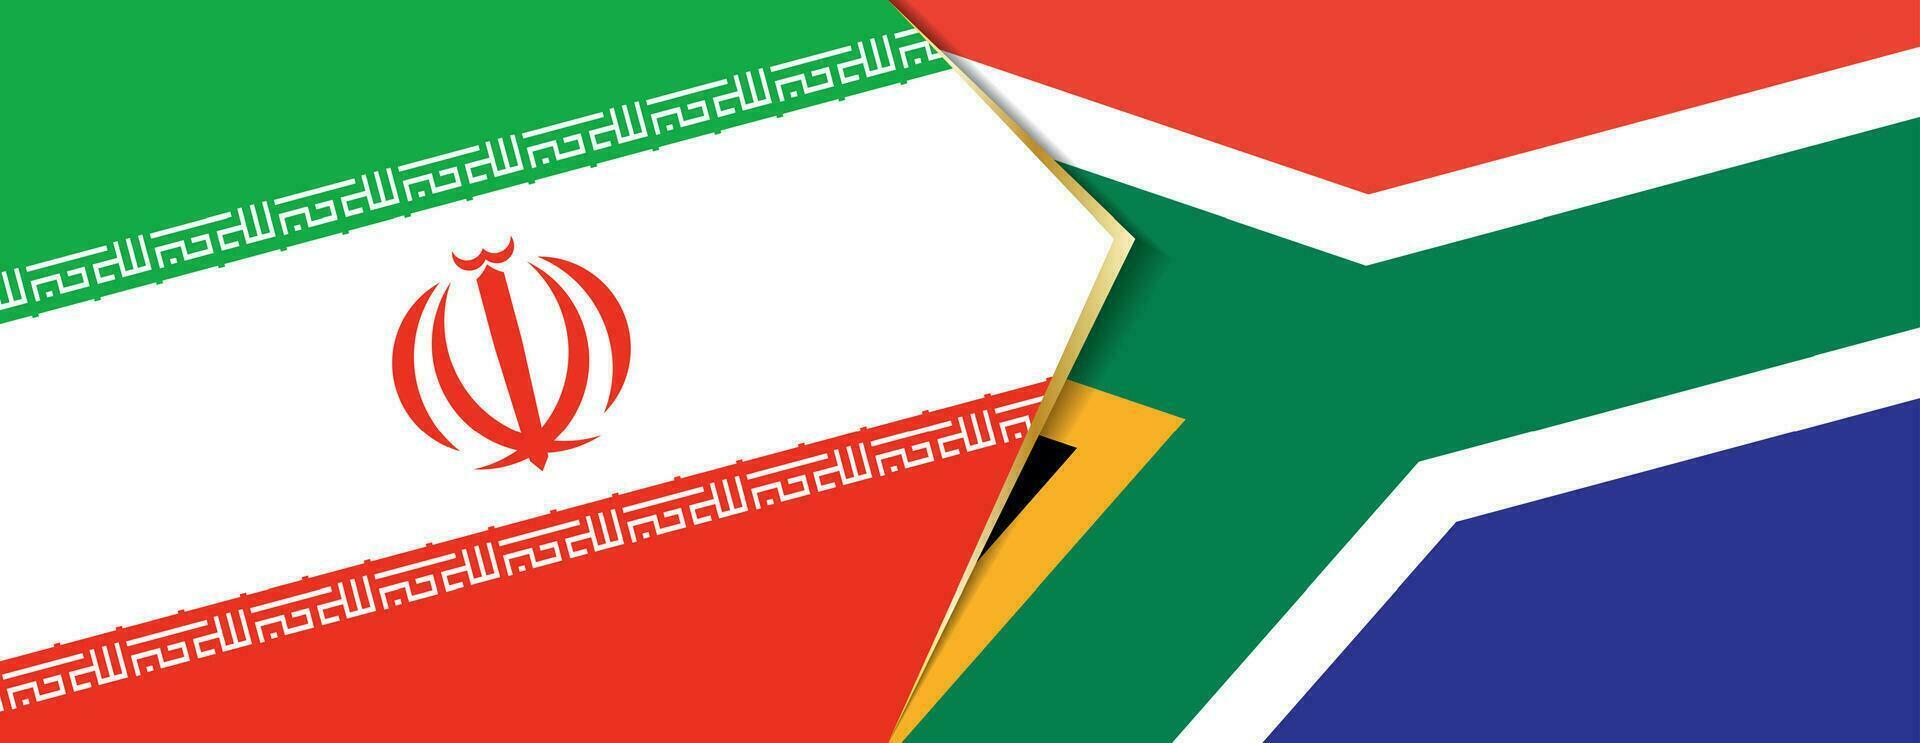 Eu corri e sul África bandeiras, dois vetor bandeiras.